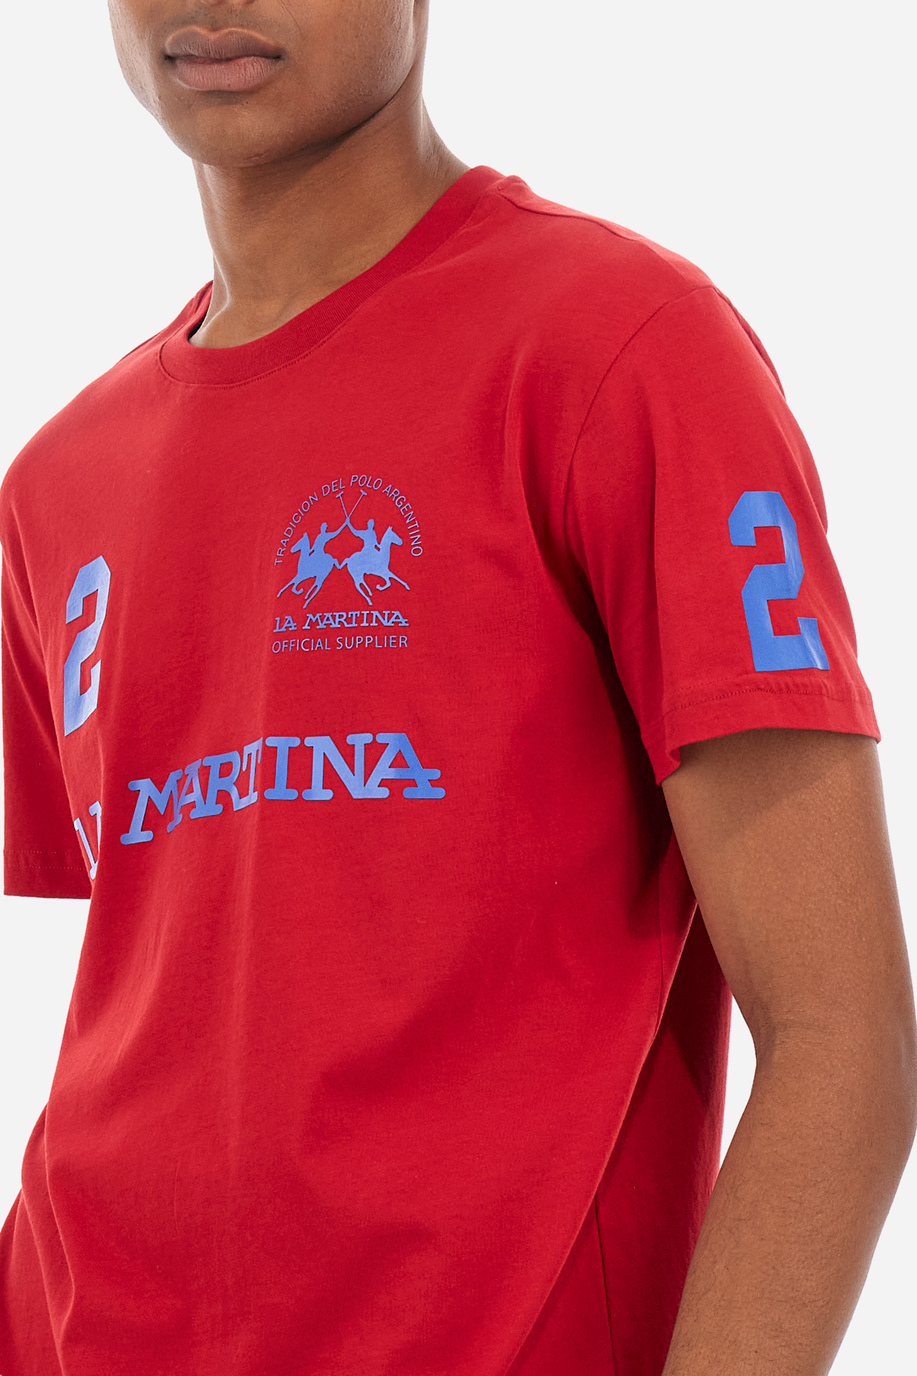 Tee-shirt homme coupe classique - Reichard - T-shirts | La Martina - Official Online Shop